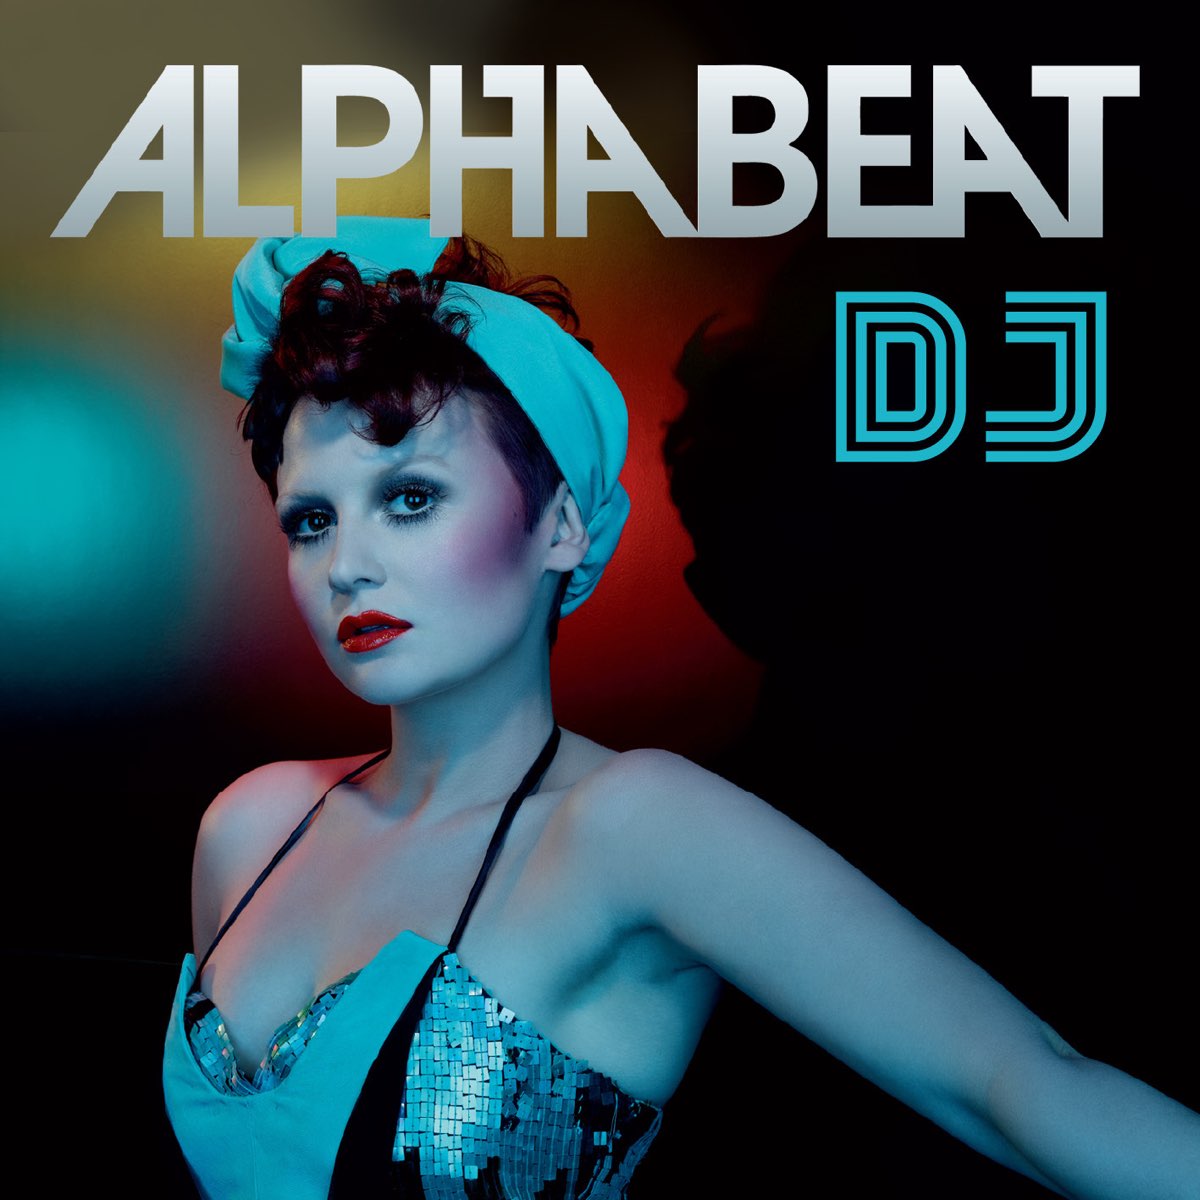 Alphabeat DJ cover artwork